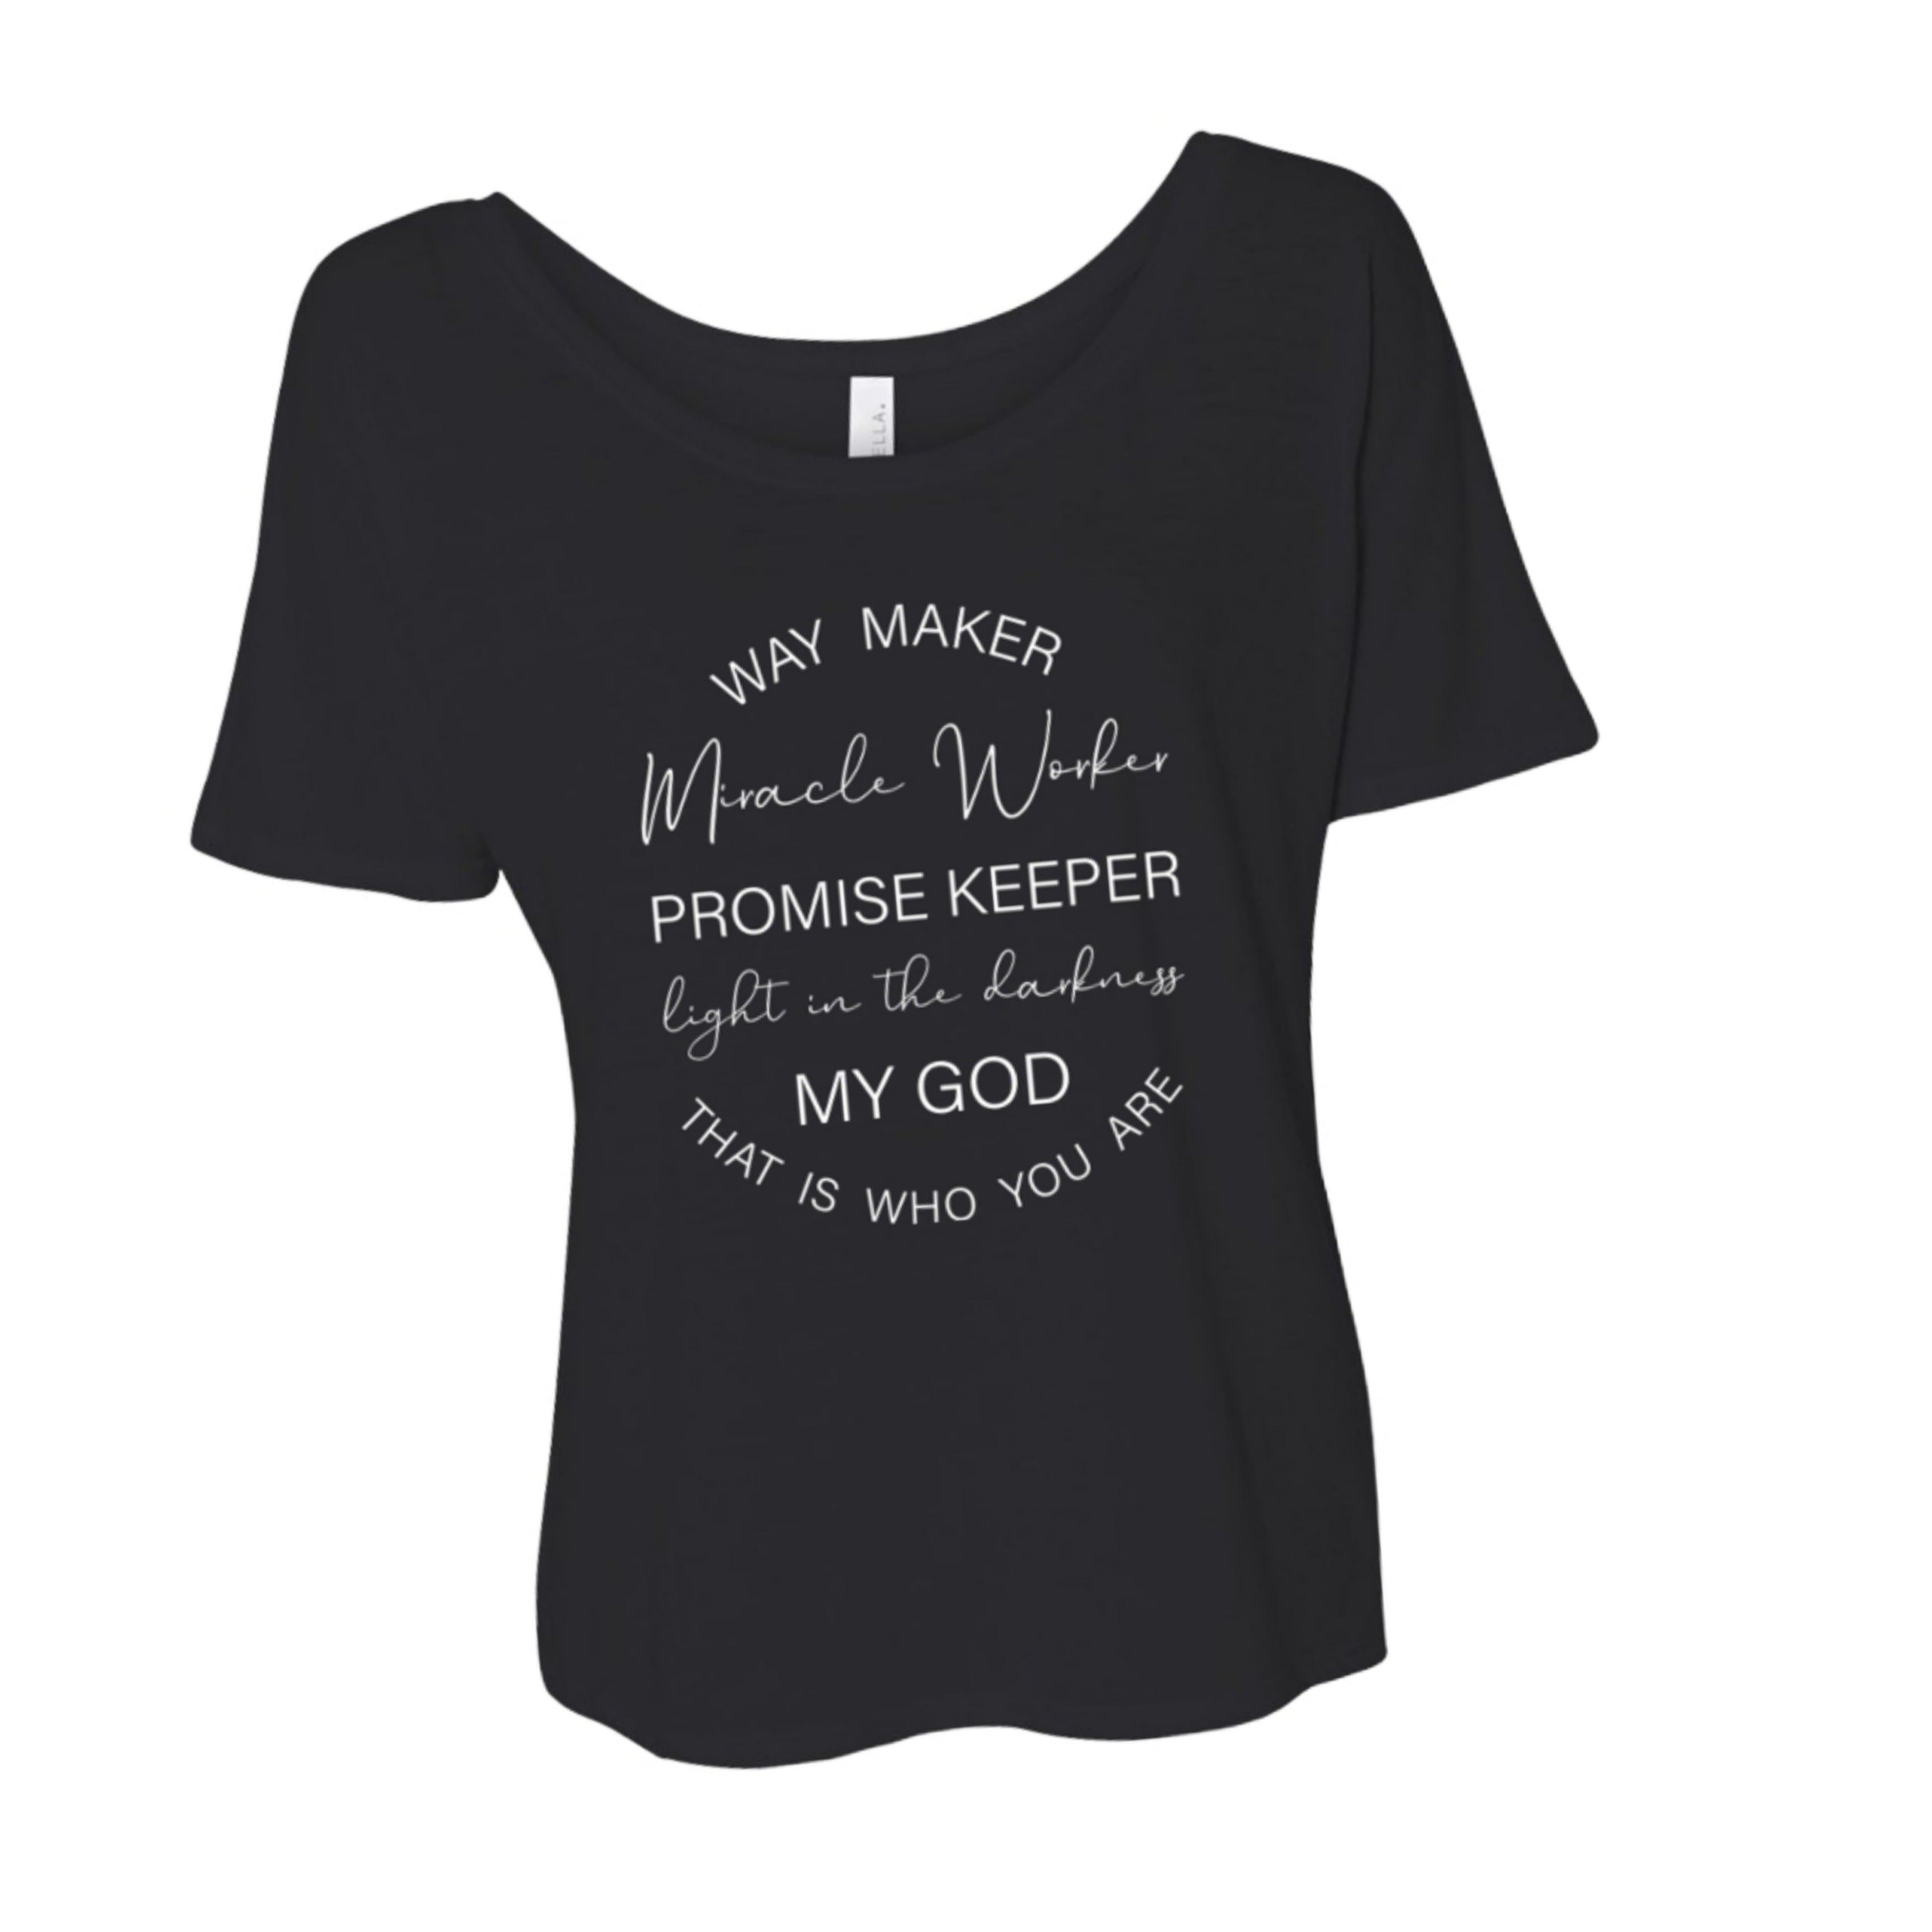 Way Maker T-Shirt